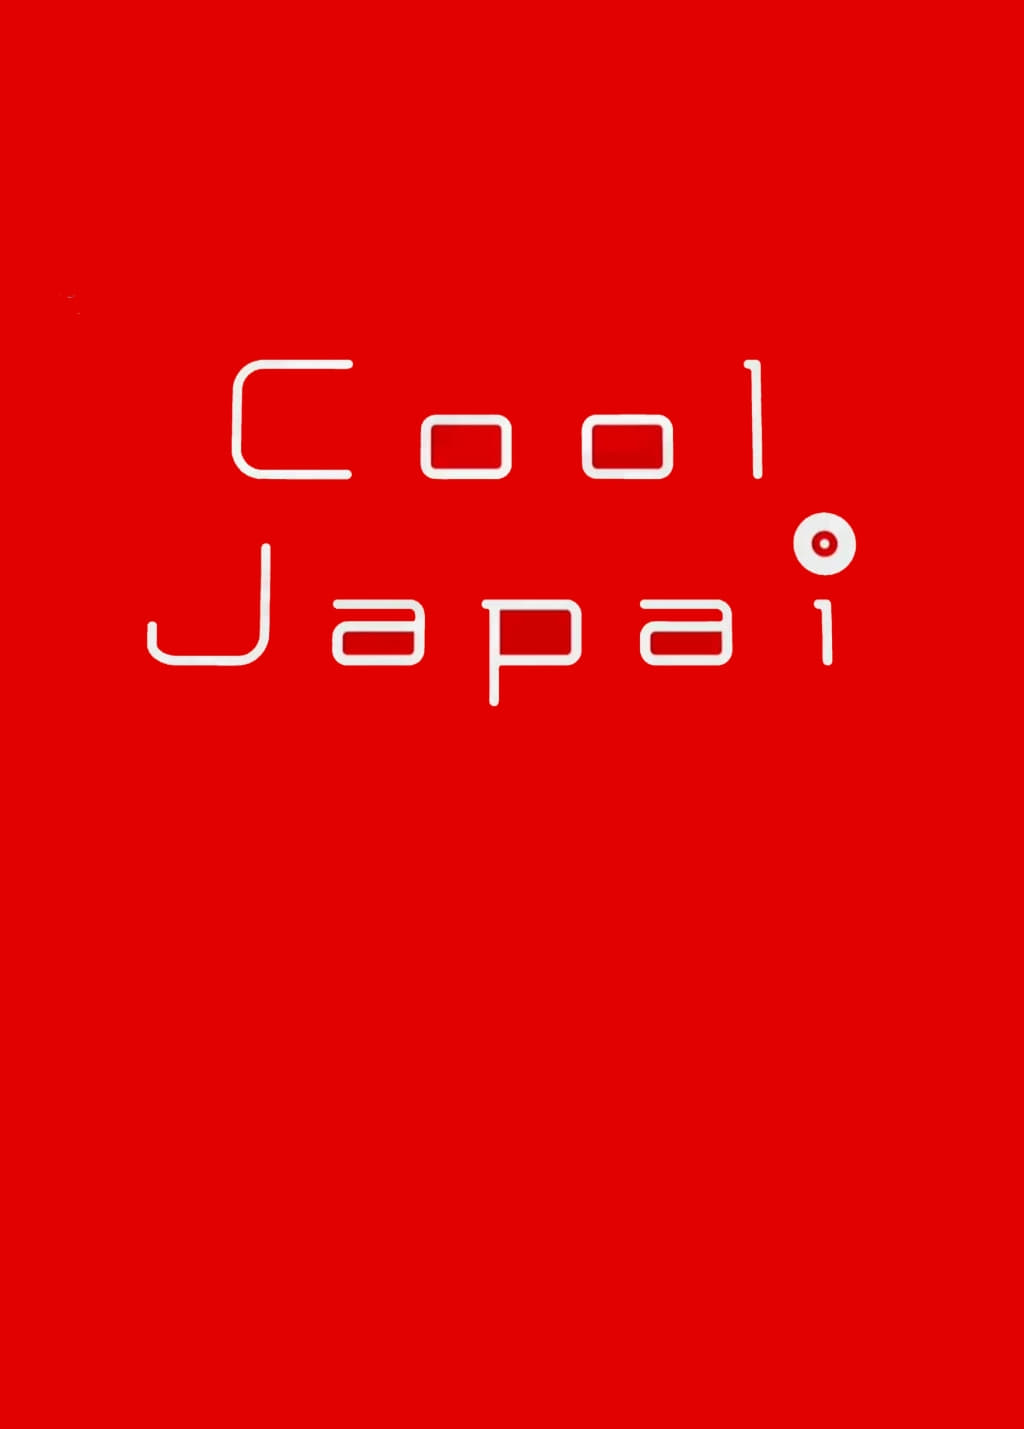 Cool Japai